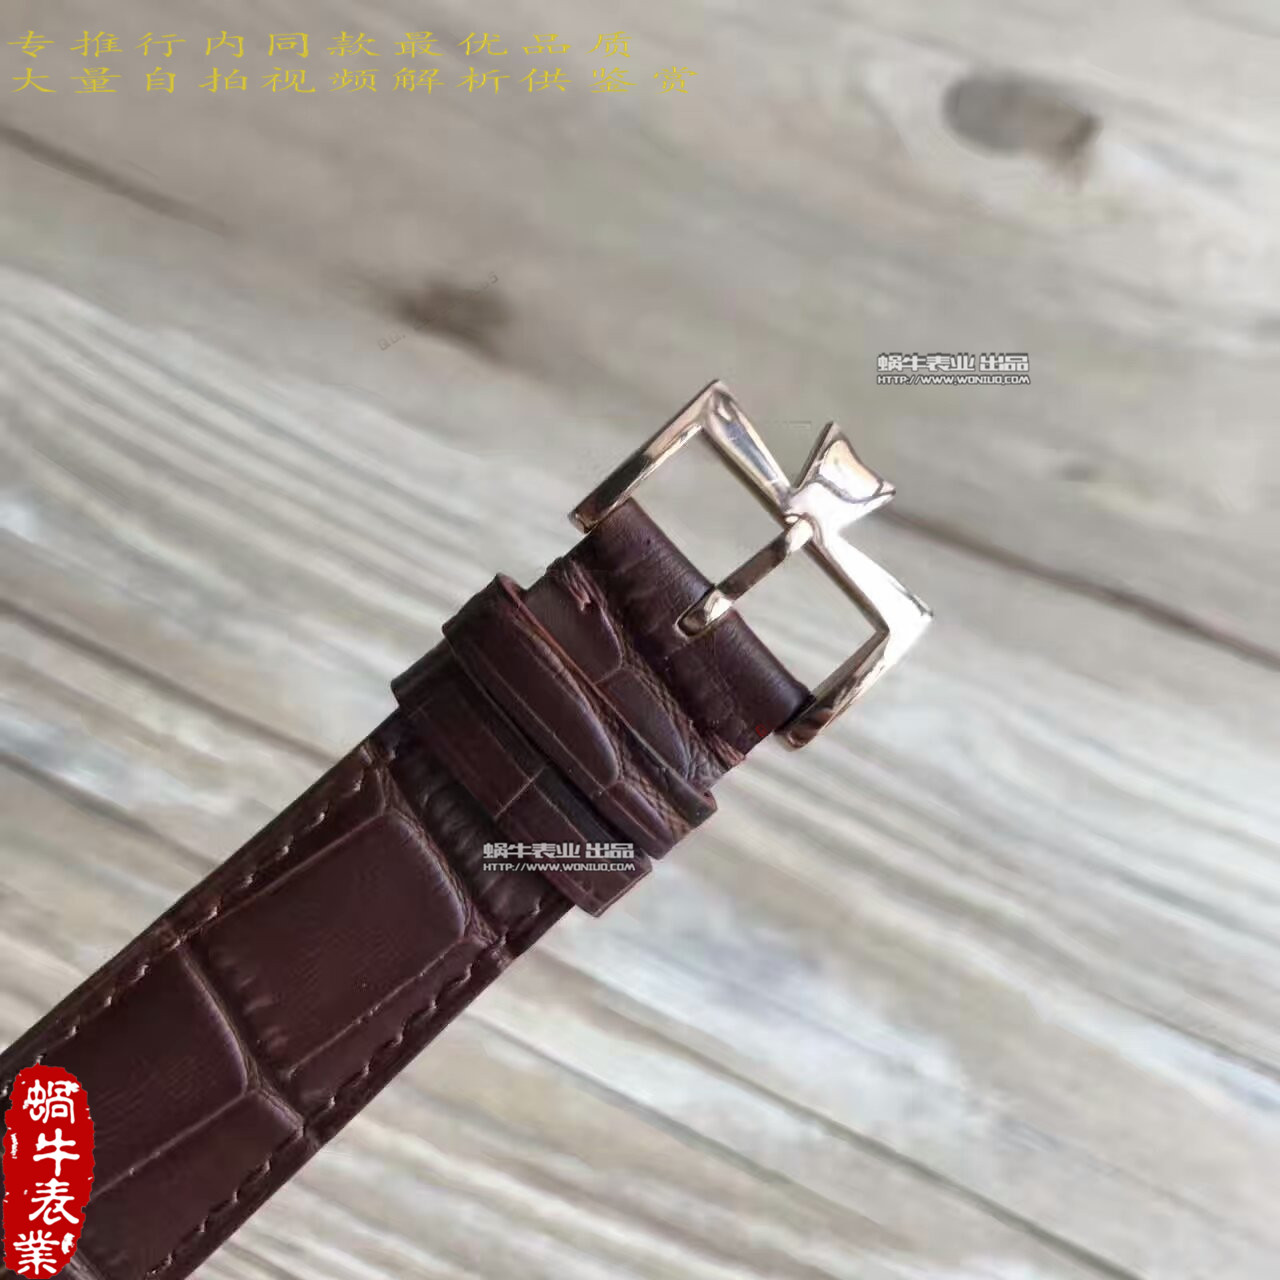 【台湾厂一比一超A精仿手表】江诗丹顿传承系列81180/000R-9159腕表 